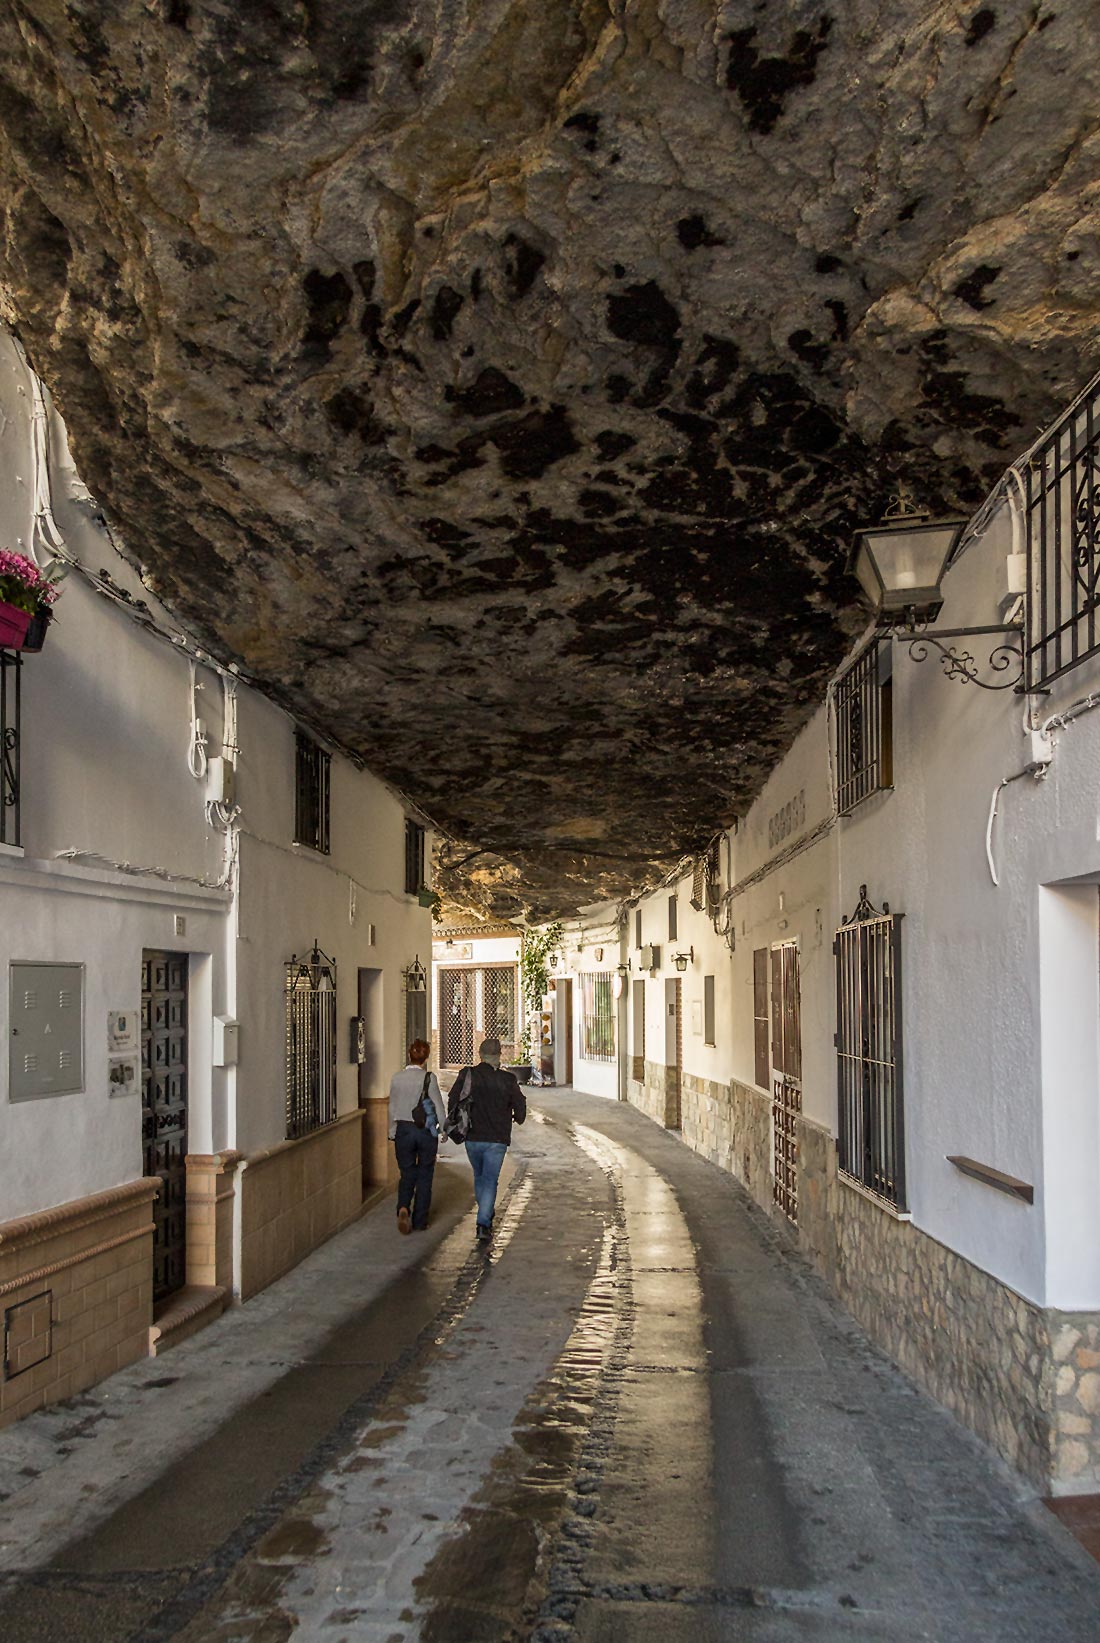 The cliff village of Setenil de las Bodegas in Andalusia